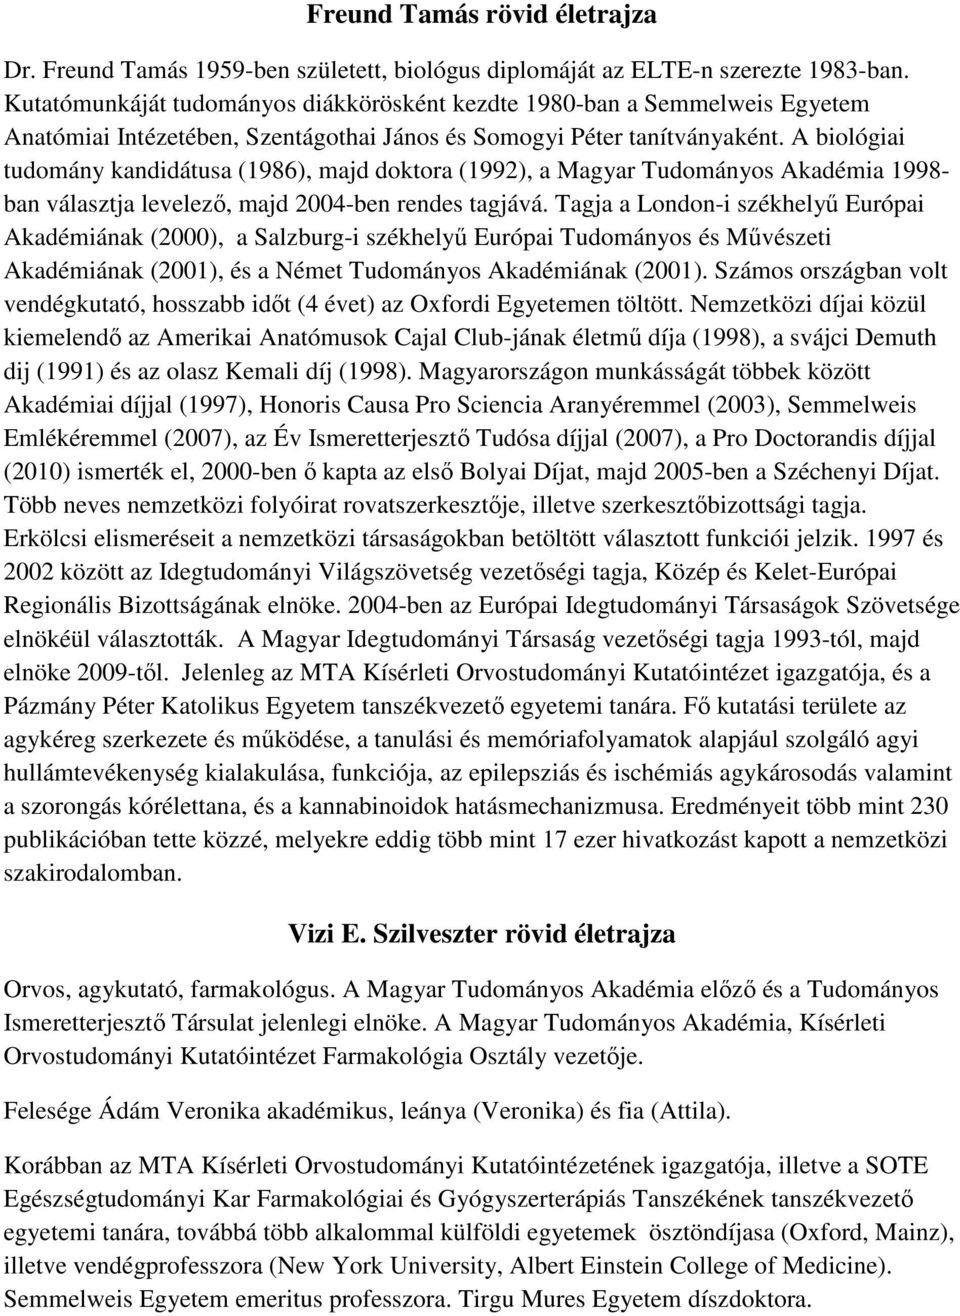 A biológiai tudomány kandidátusa (1986), majd doktora (1992), a Magyar Tudományos Akadémia 1998- ban választja levelezı, majd 2004-ben rendes tagjává.